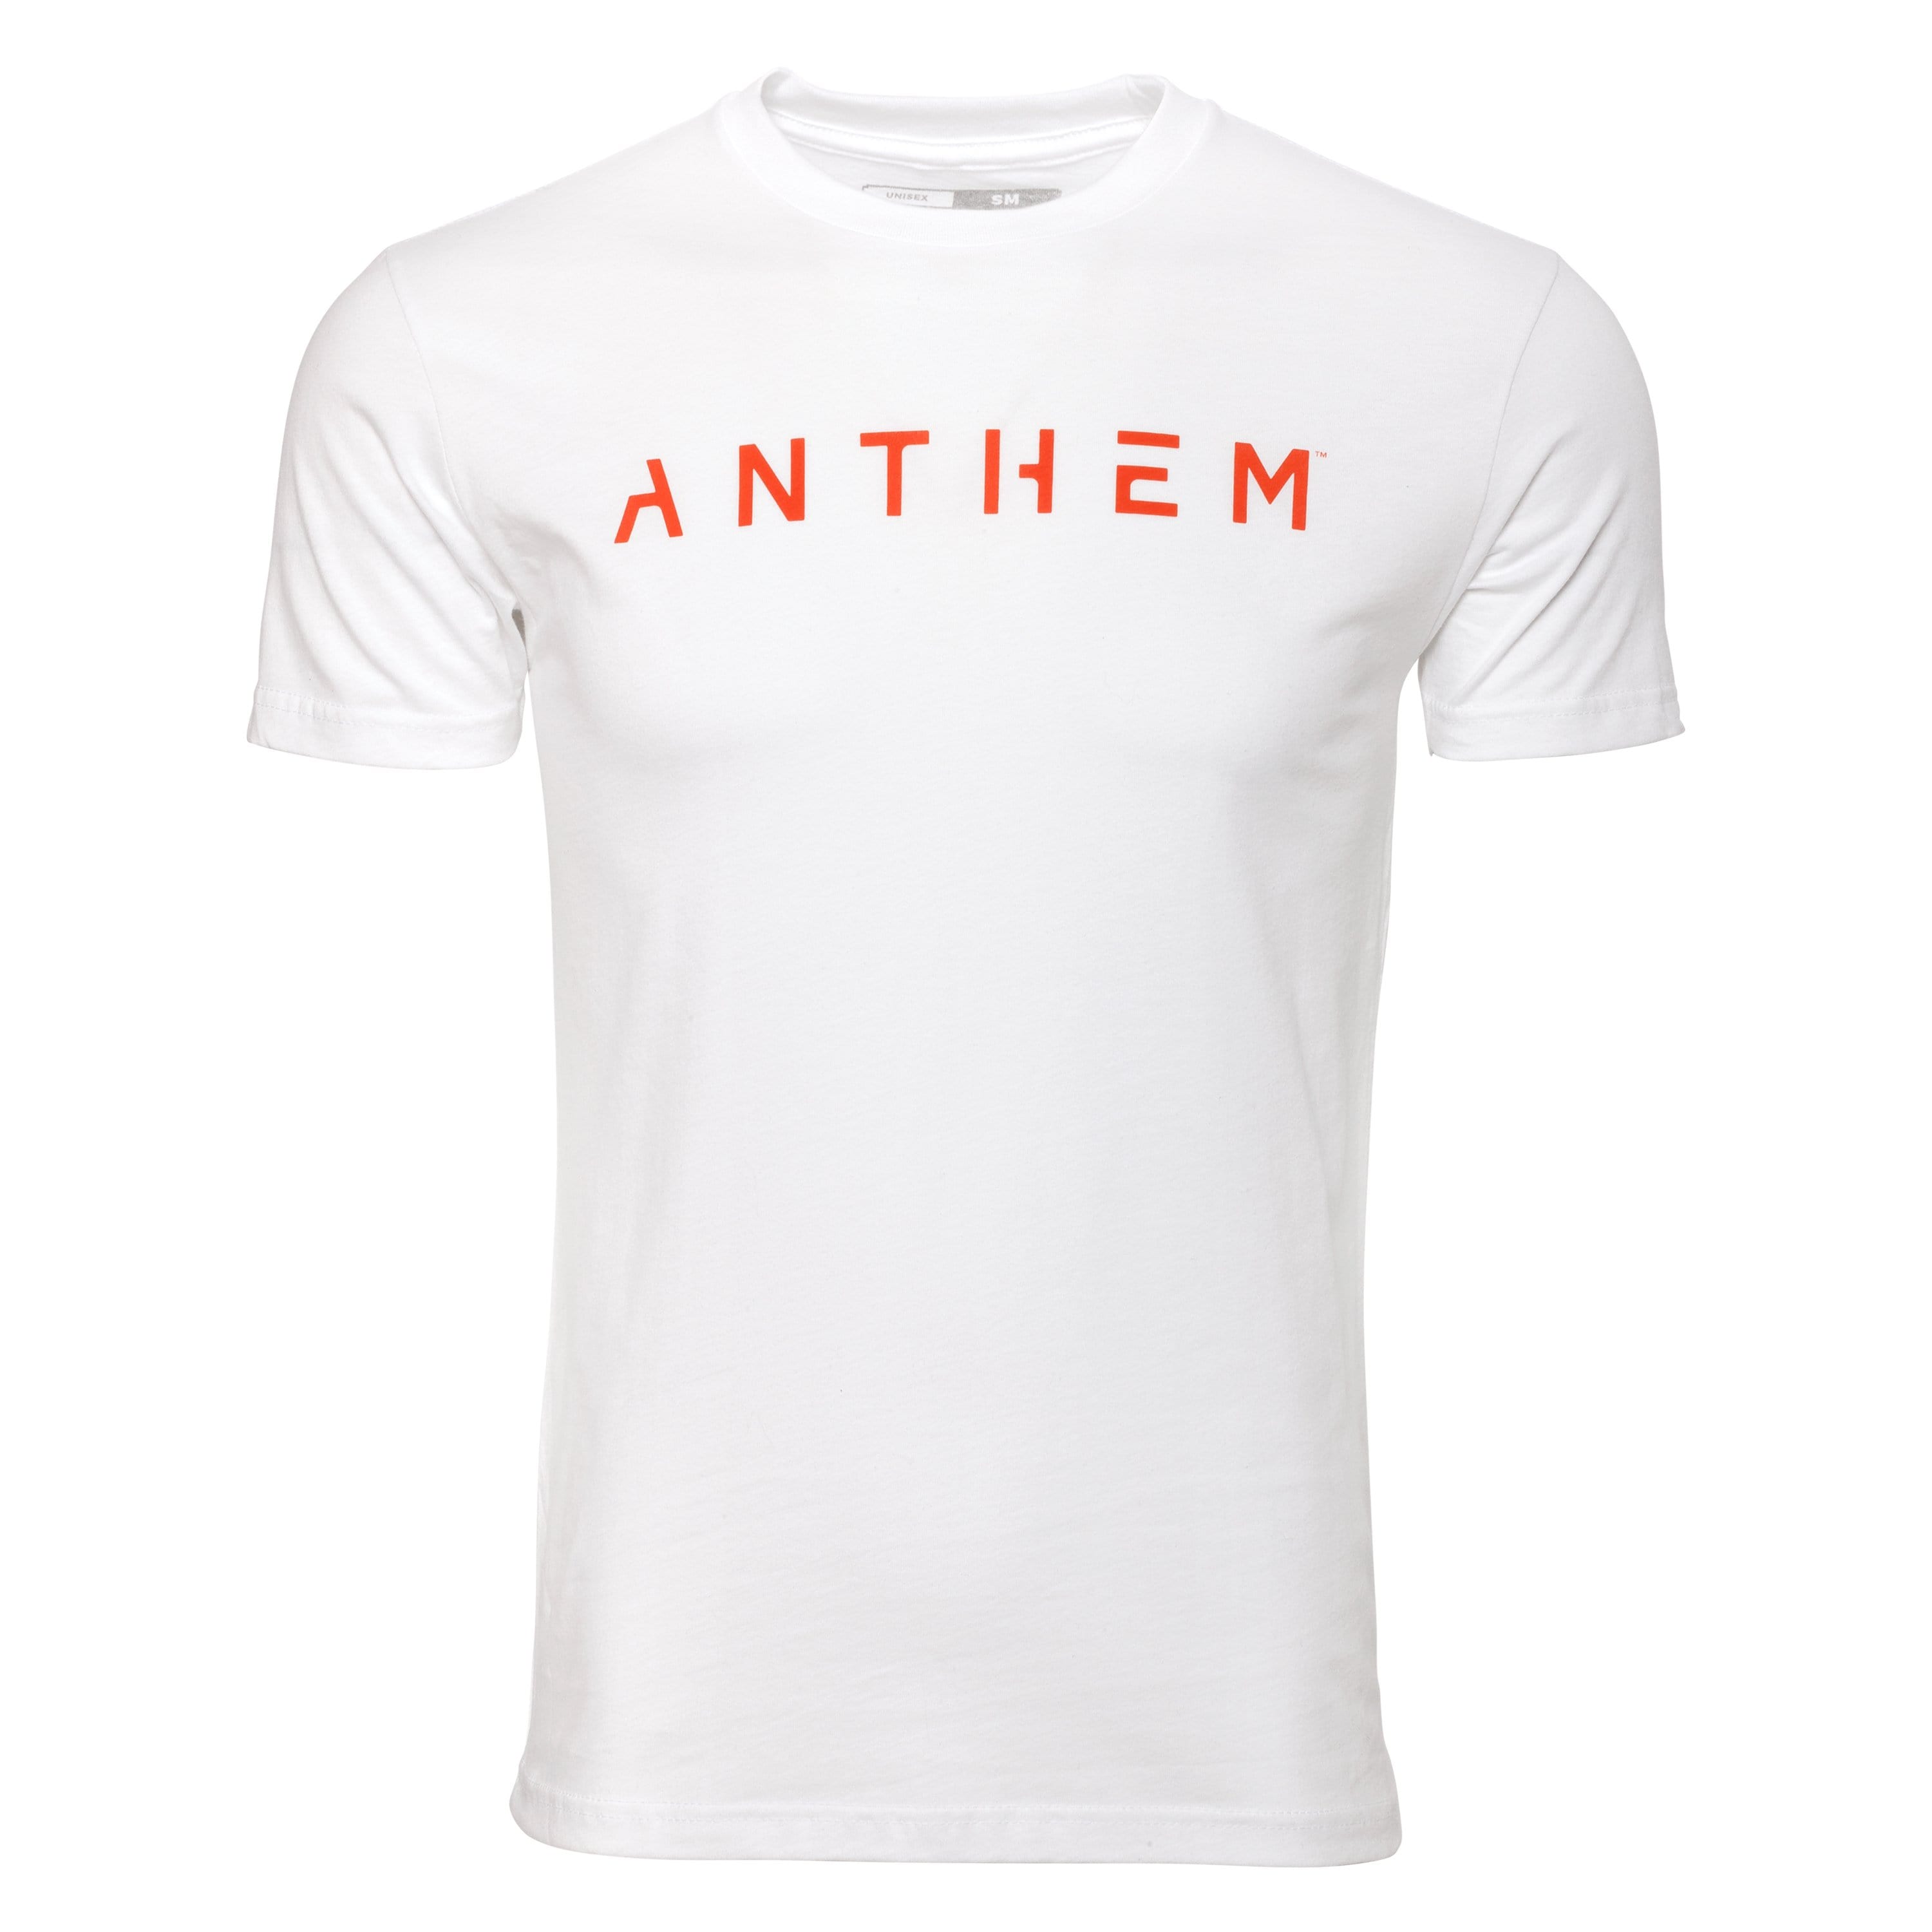 Anthem Emblem Tee - White